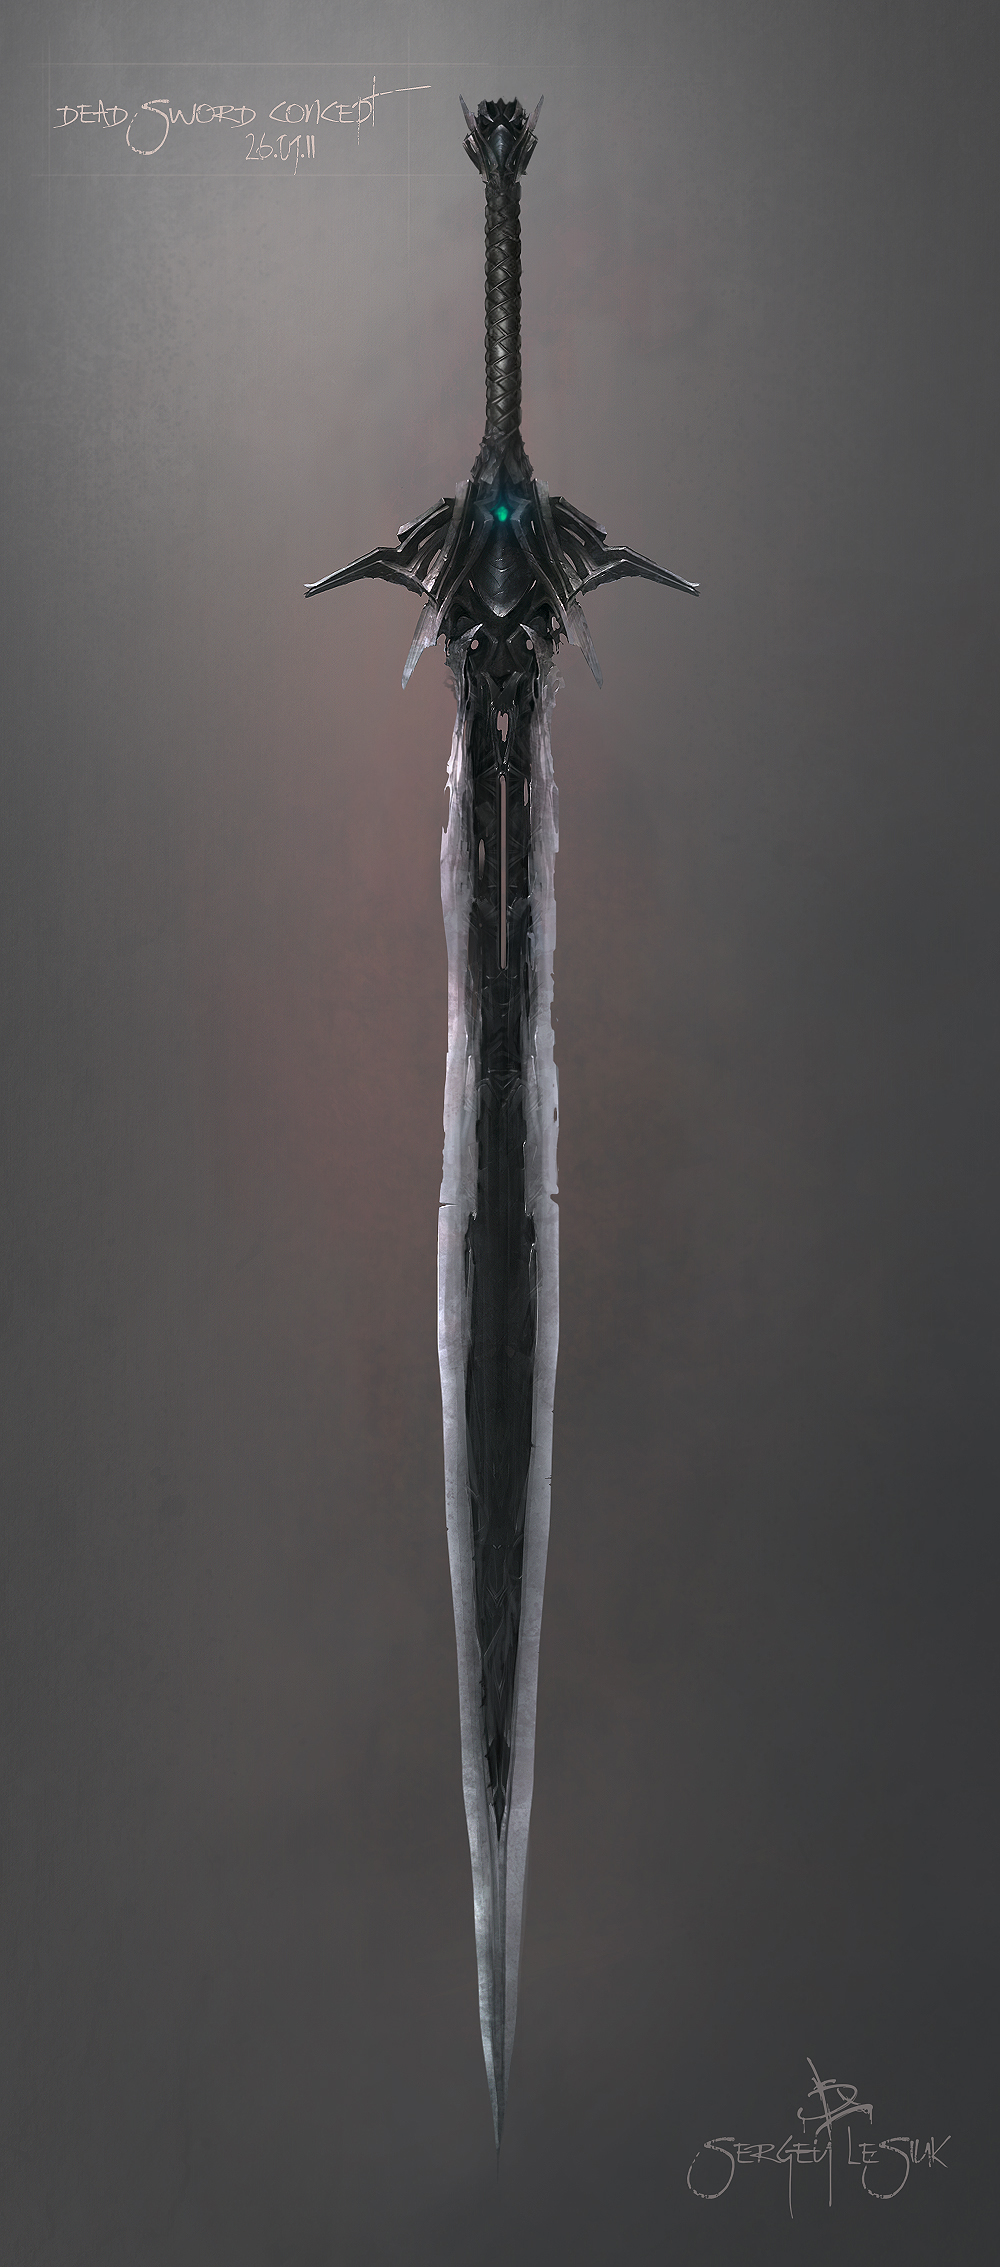 Большой черный меч. Soul Reaver меч. Сигиль меч. Двуручный меч тьмы. Одноручный меч фэнтези.